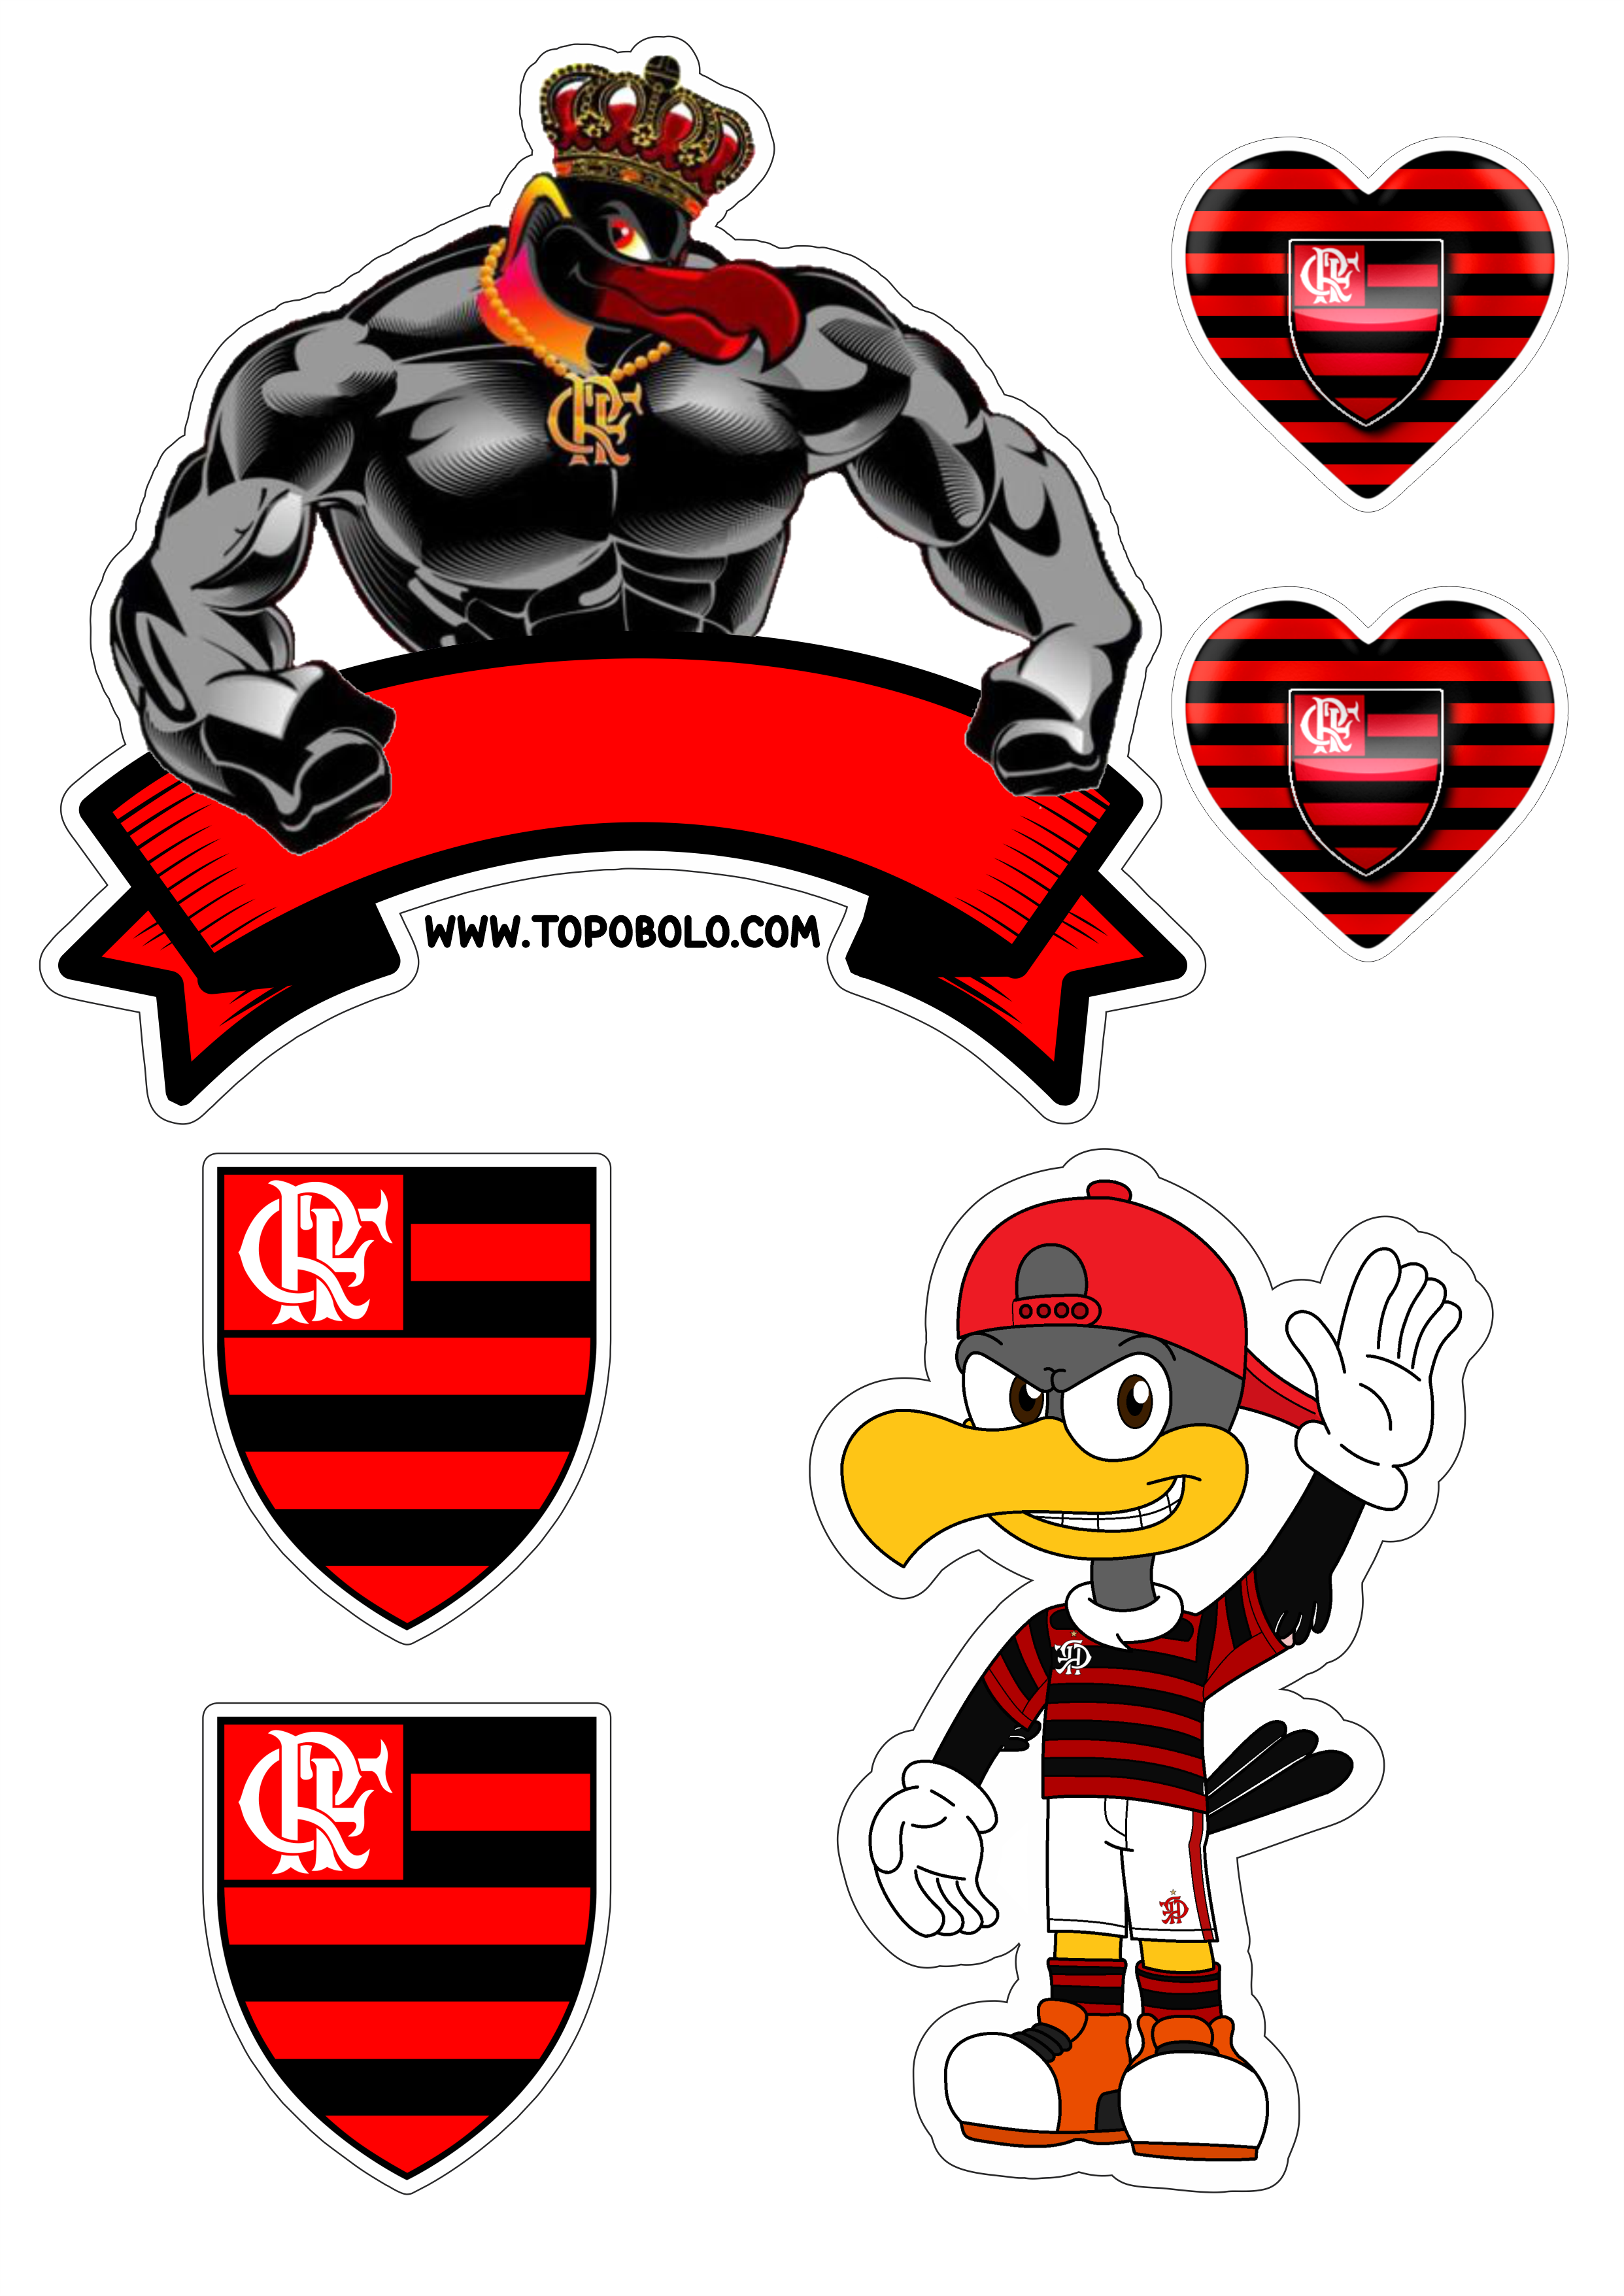 Flamengo futebol clube topo de bolo decoração de aniversário urubu mascote png